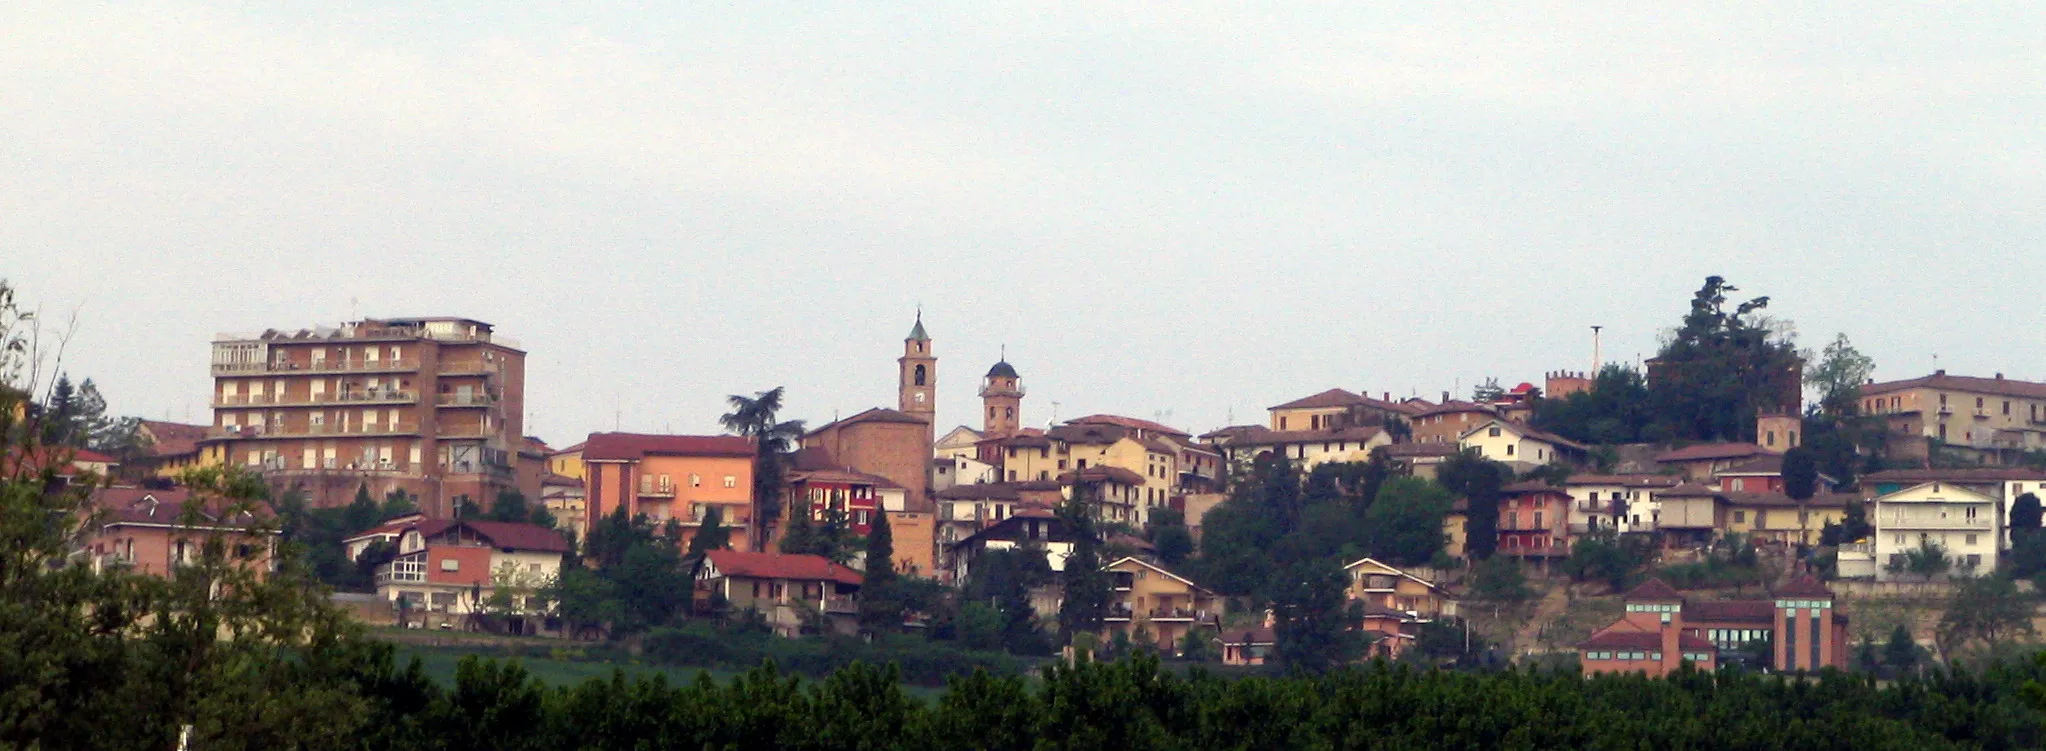 Image of Agliano Terme